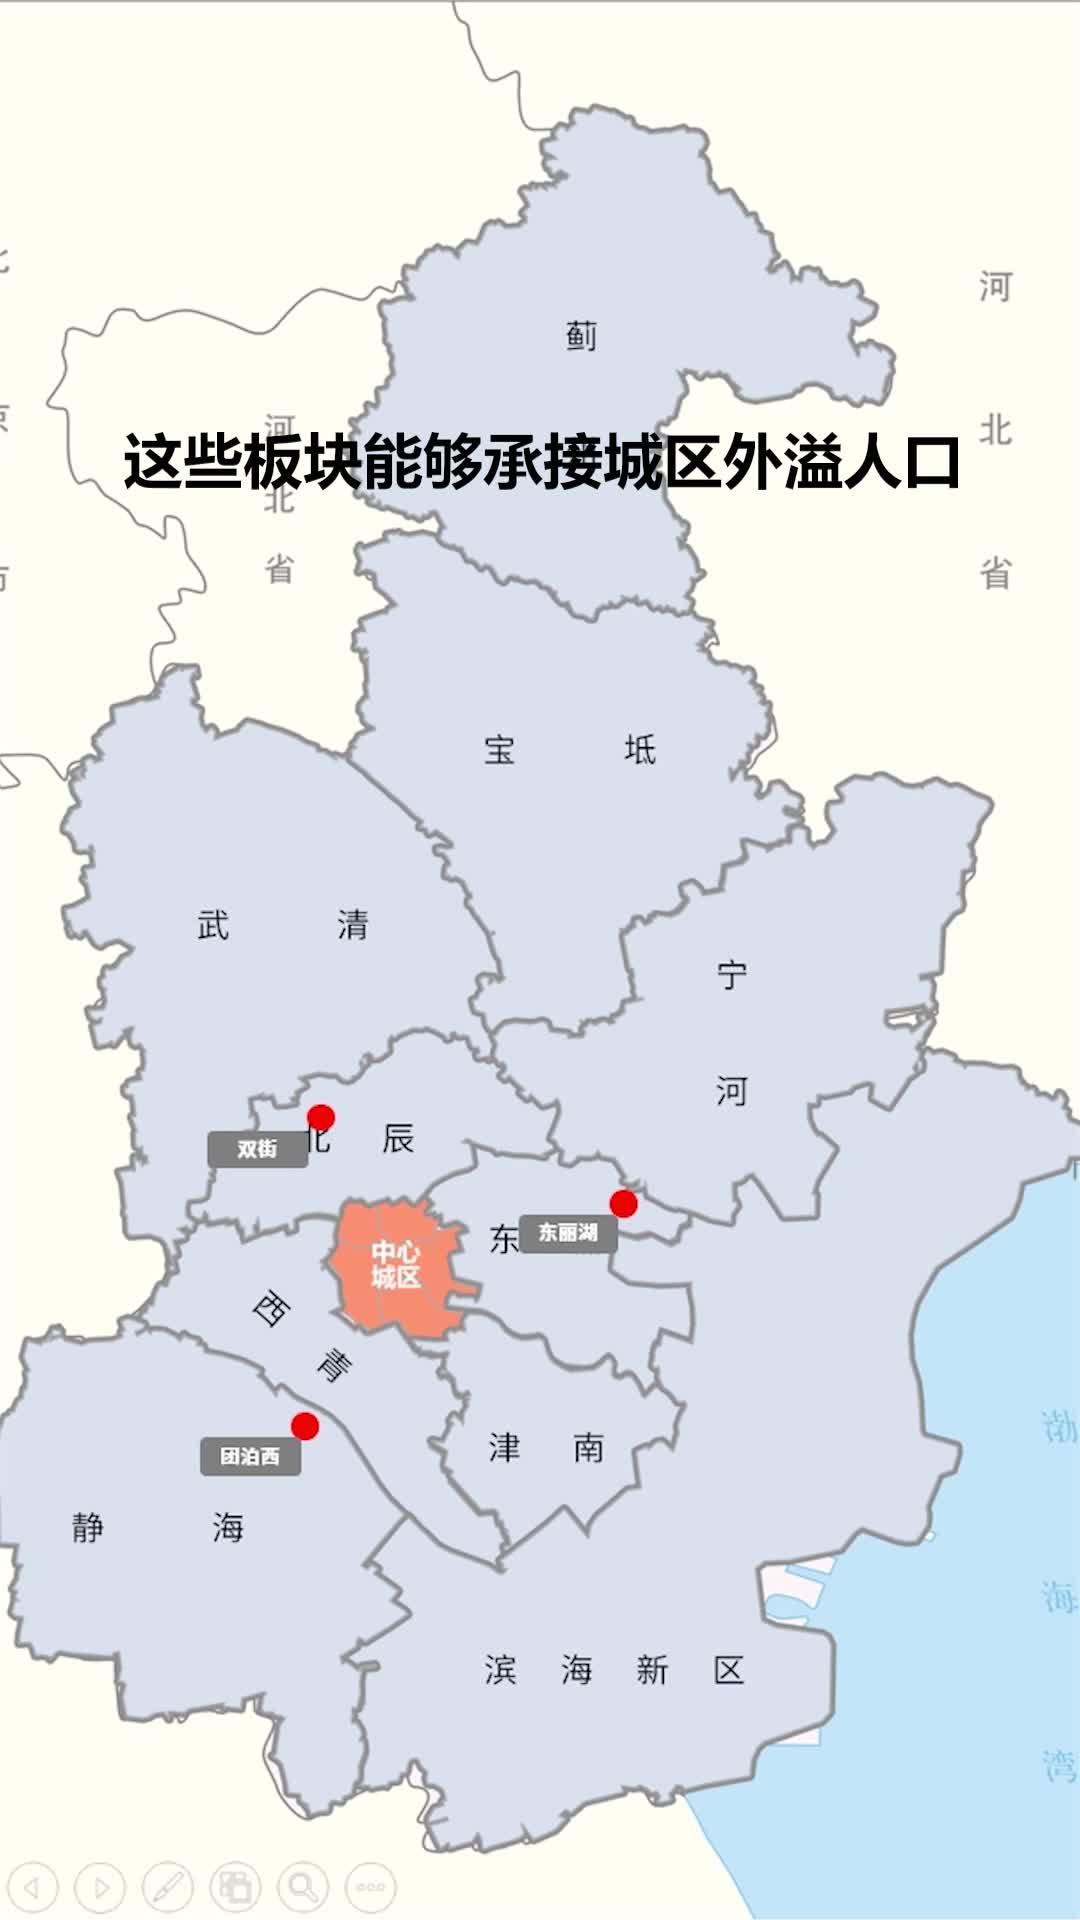 天津市行政区域划分